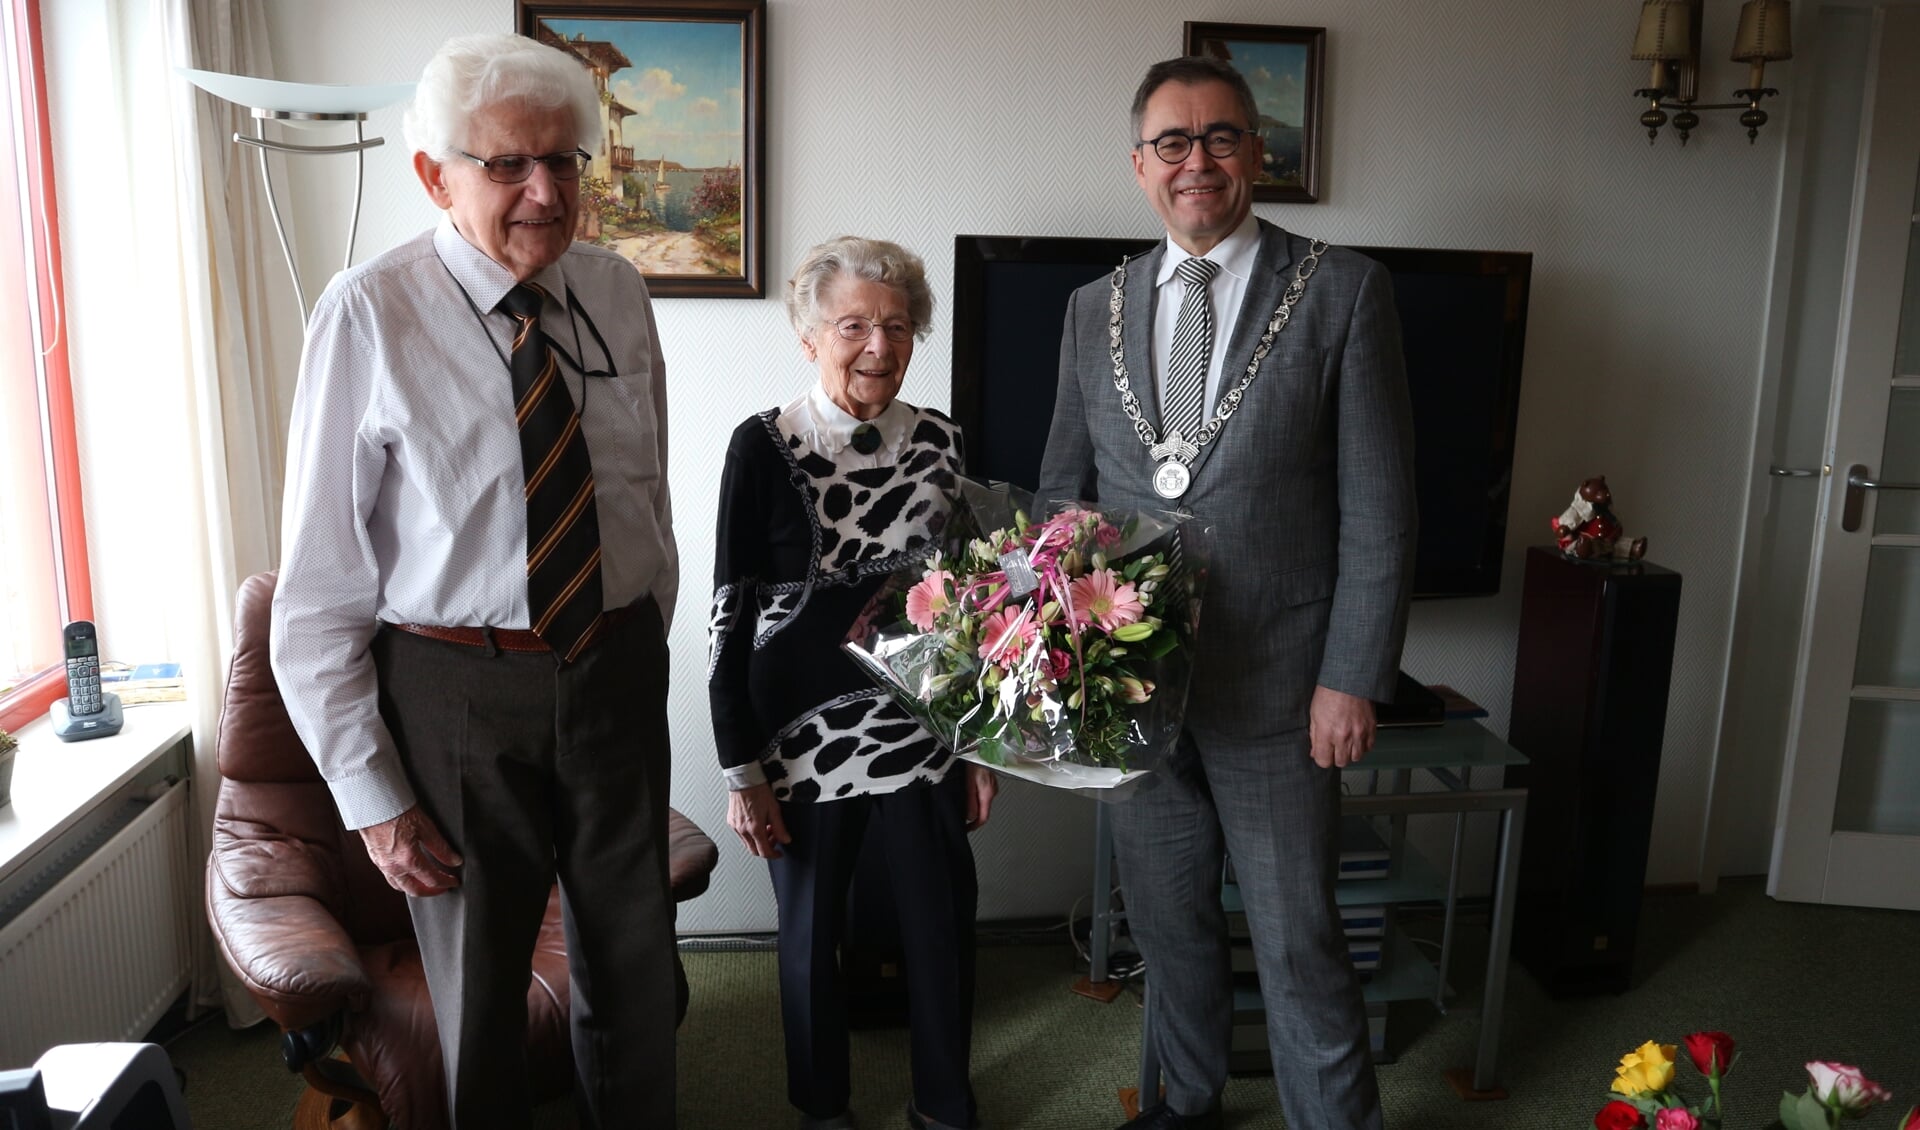 Burgemeester Jos Wienen bracht het echtpaar De Kruif op hun 65ste trouwdag een mooi boeket bloemen. 